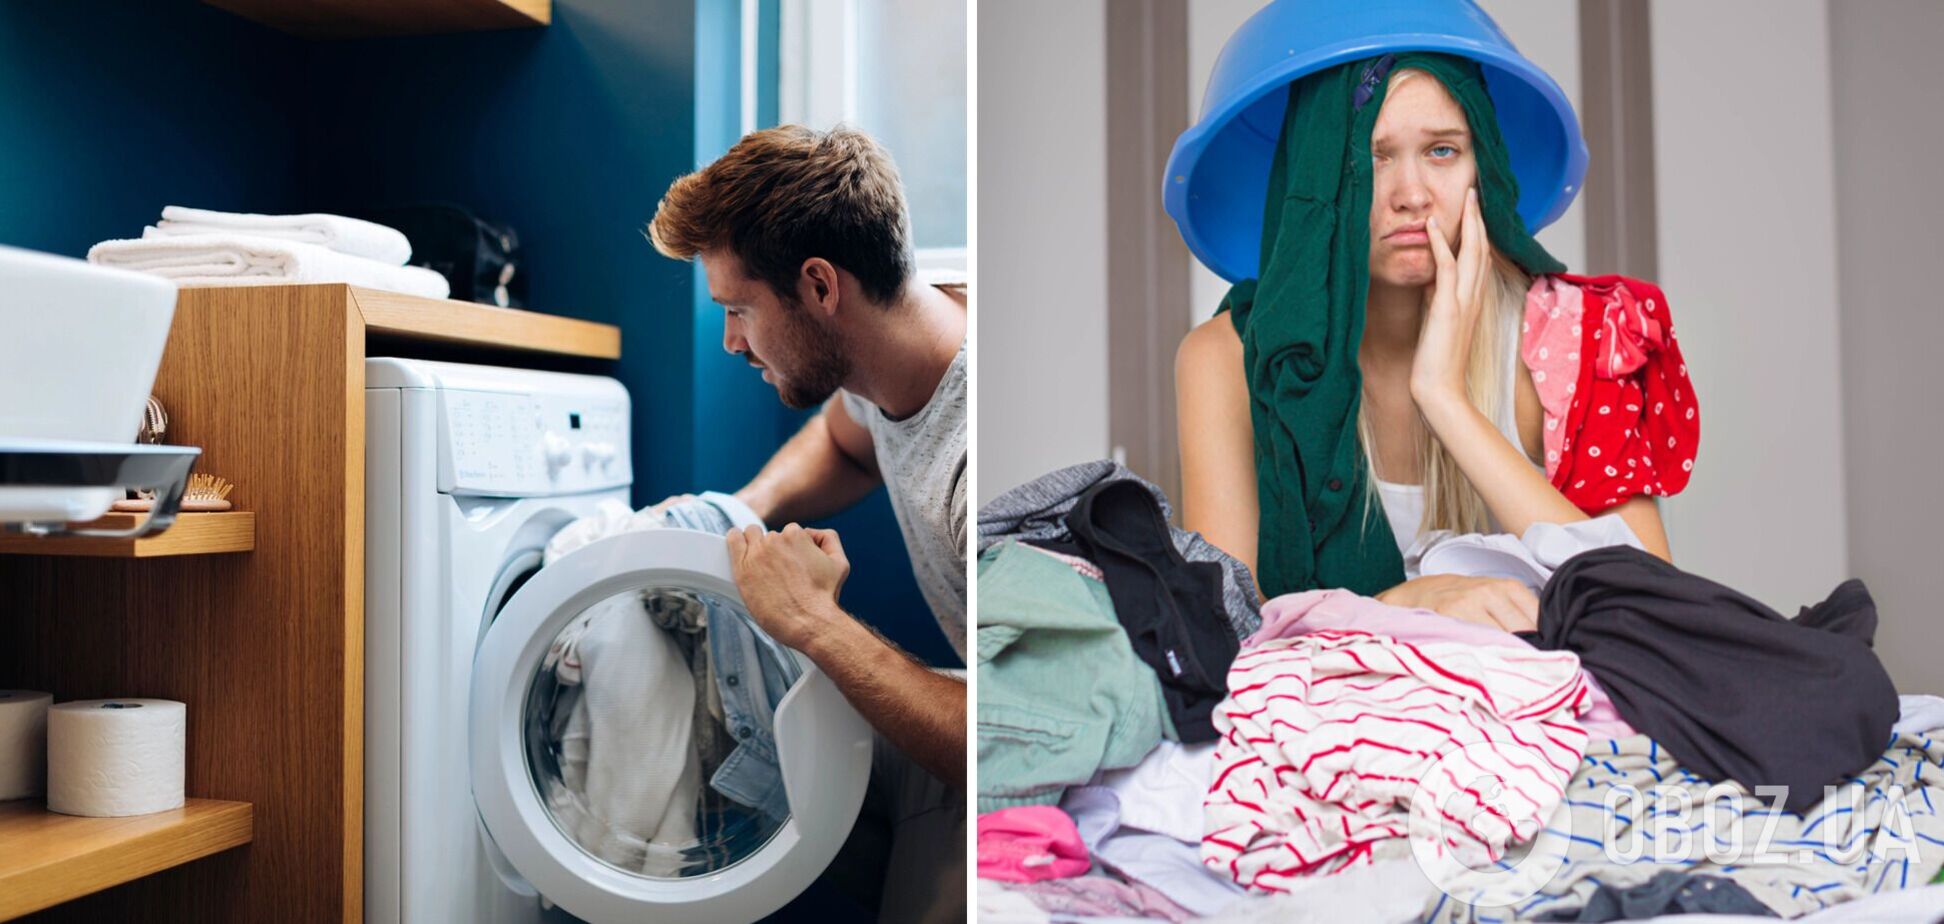 Топ-15 помилок під час прання, які роблять майже усі: робіть це правильно